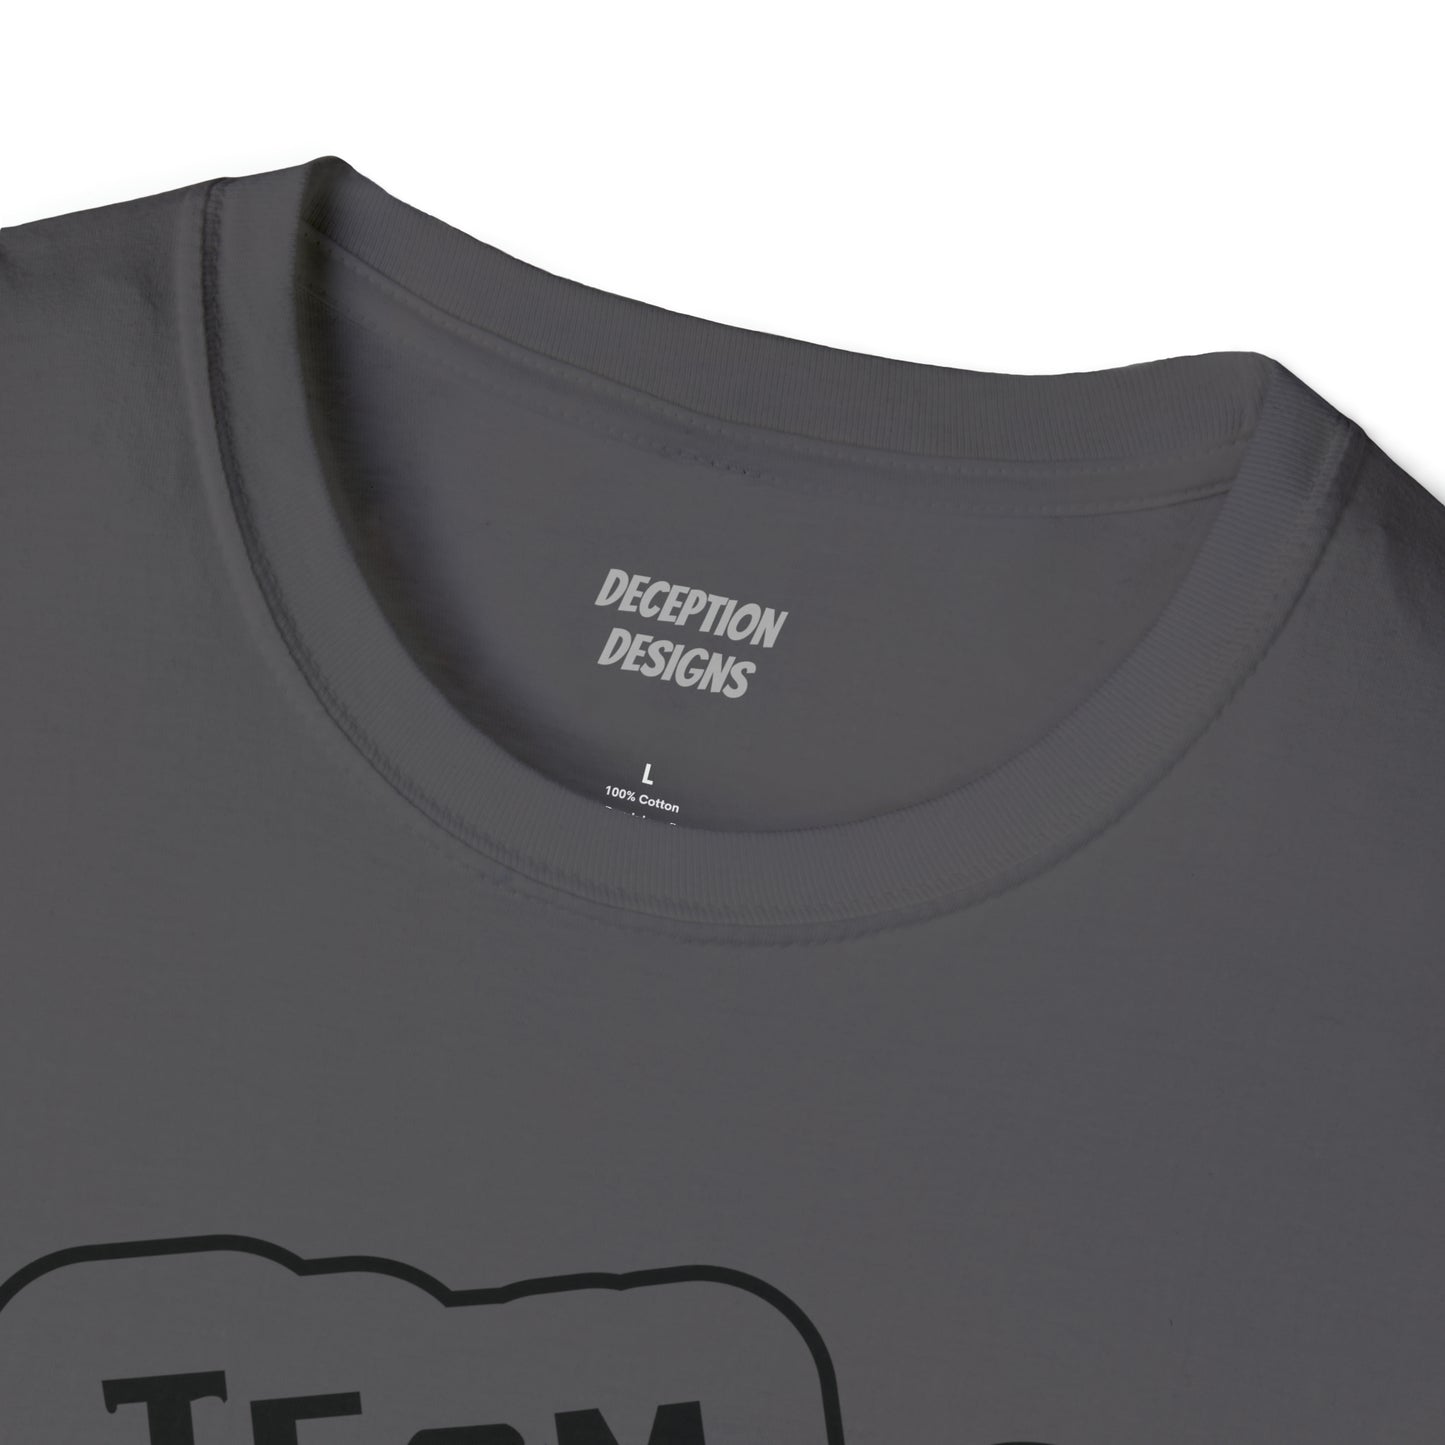 TEAM SOA Unisex Softstyle T-Shirt